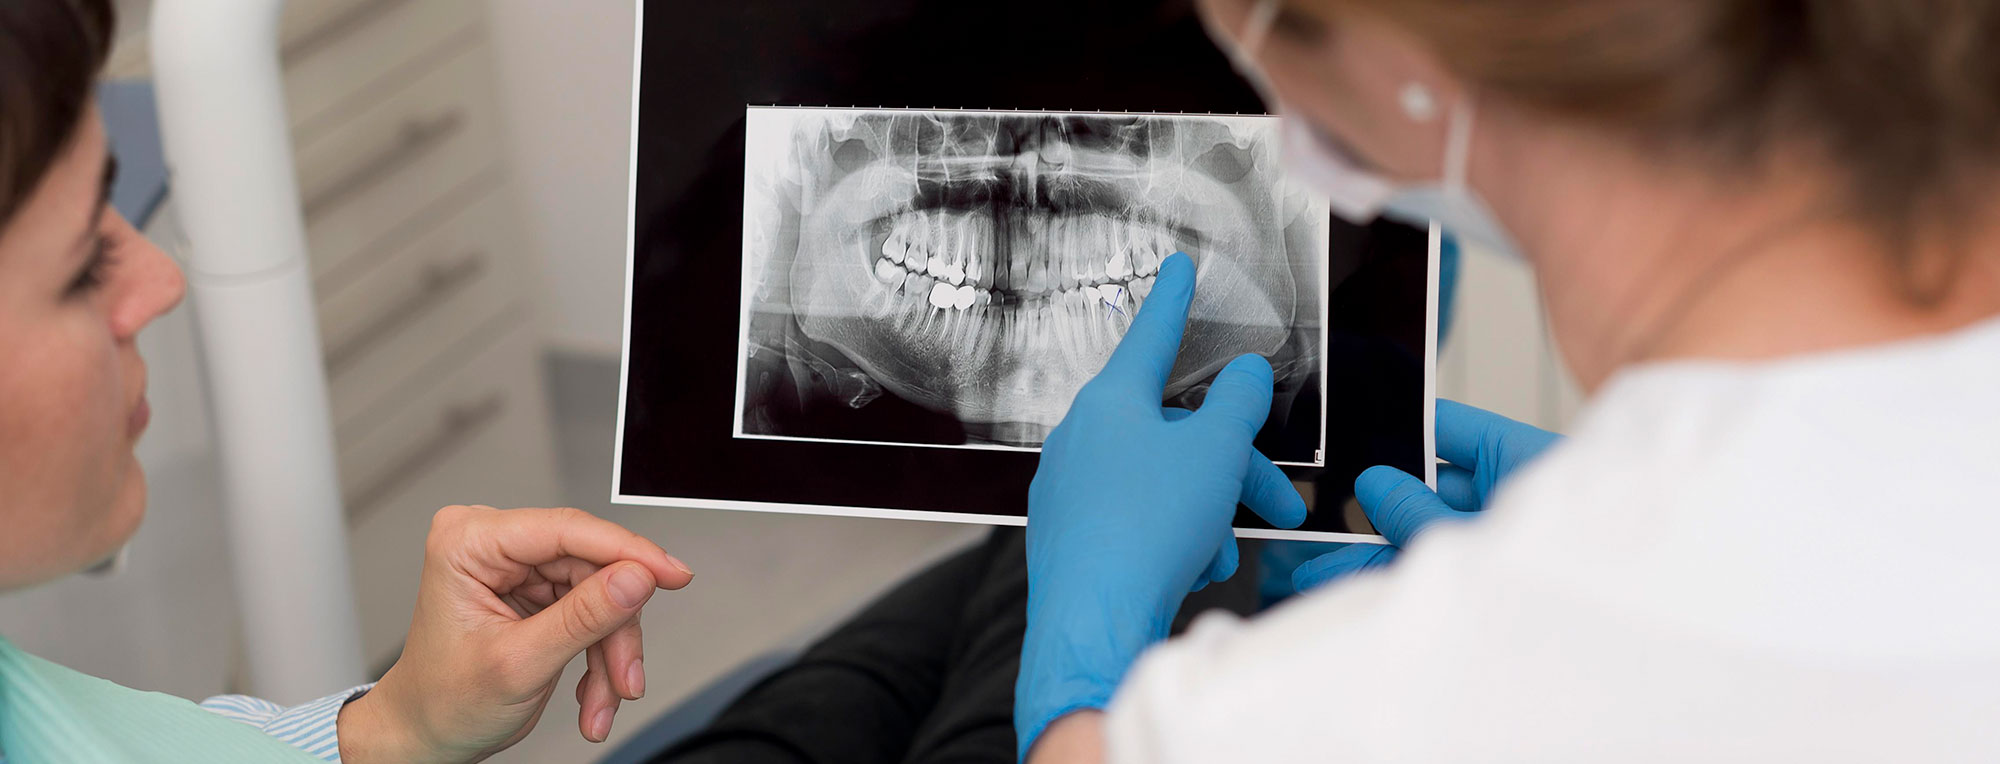 El diagnóstico en tratamientos dentalel